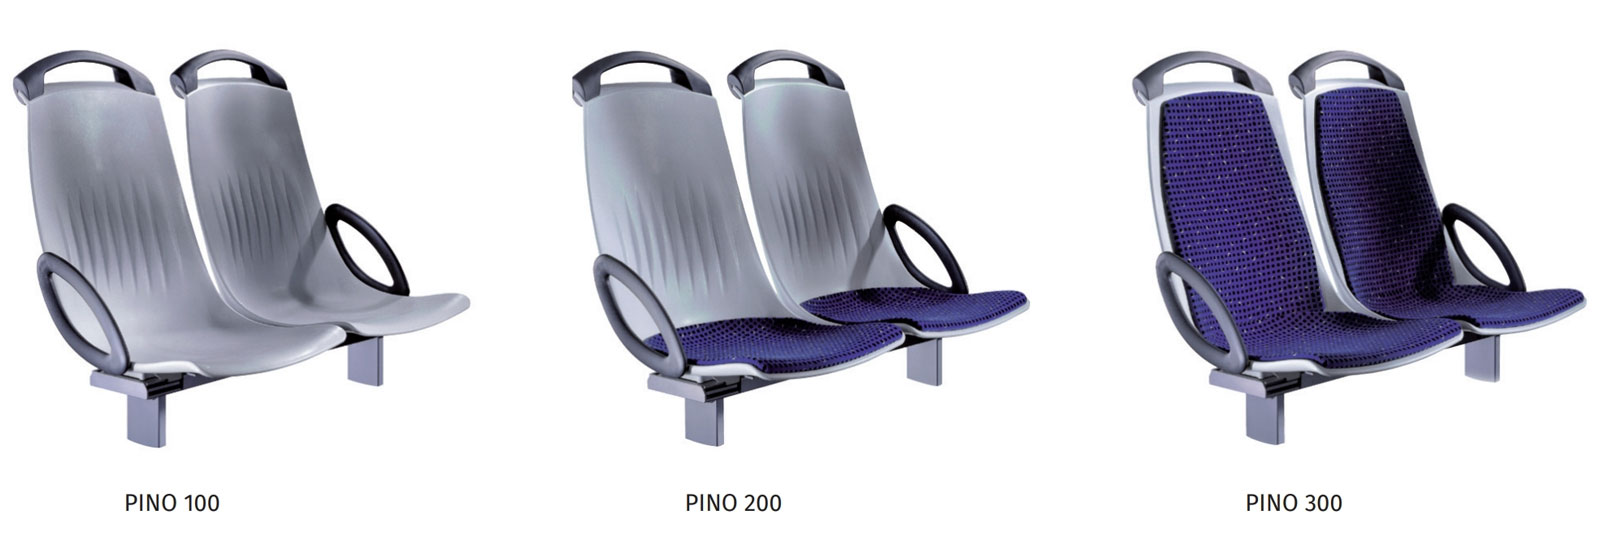 Sitzausführungen von Bus- und Bahnsitz "Pino"